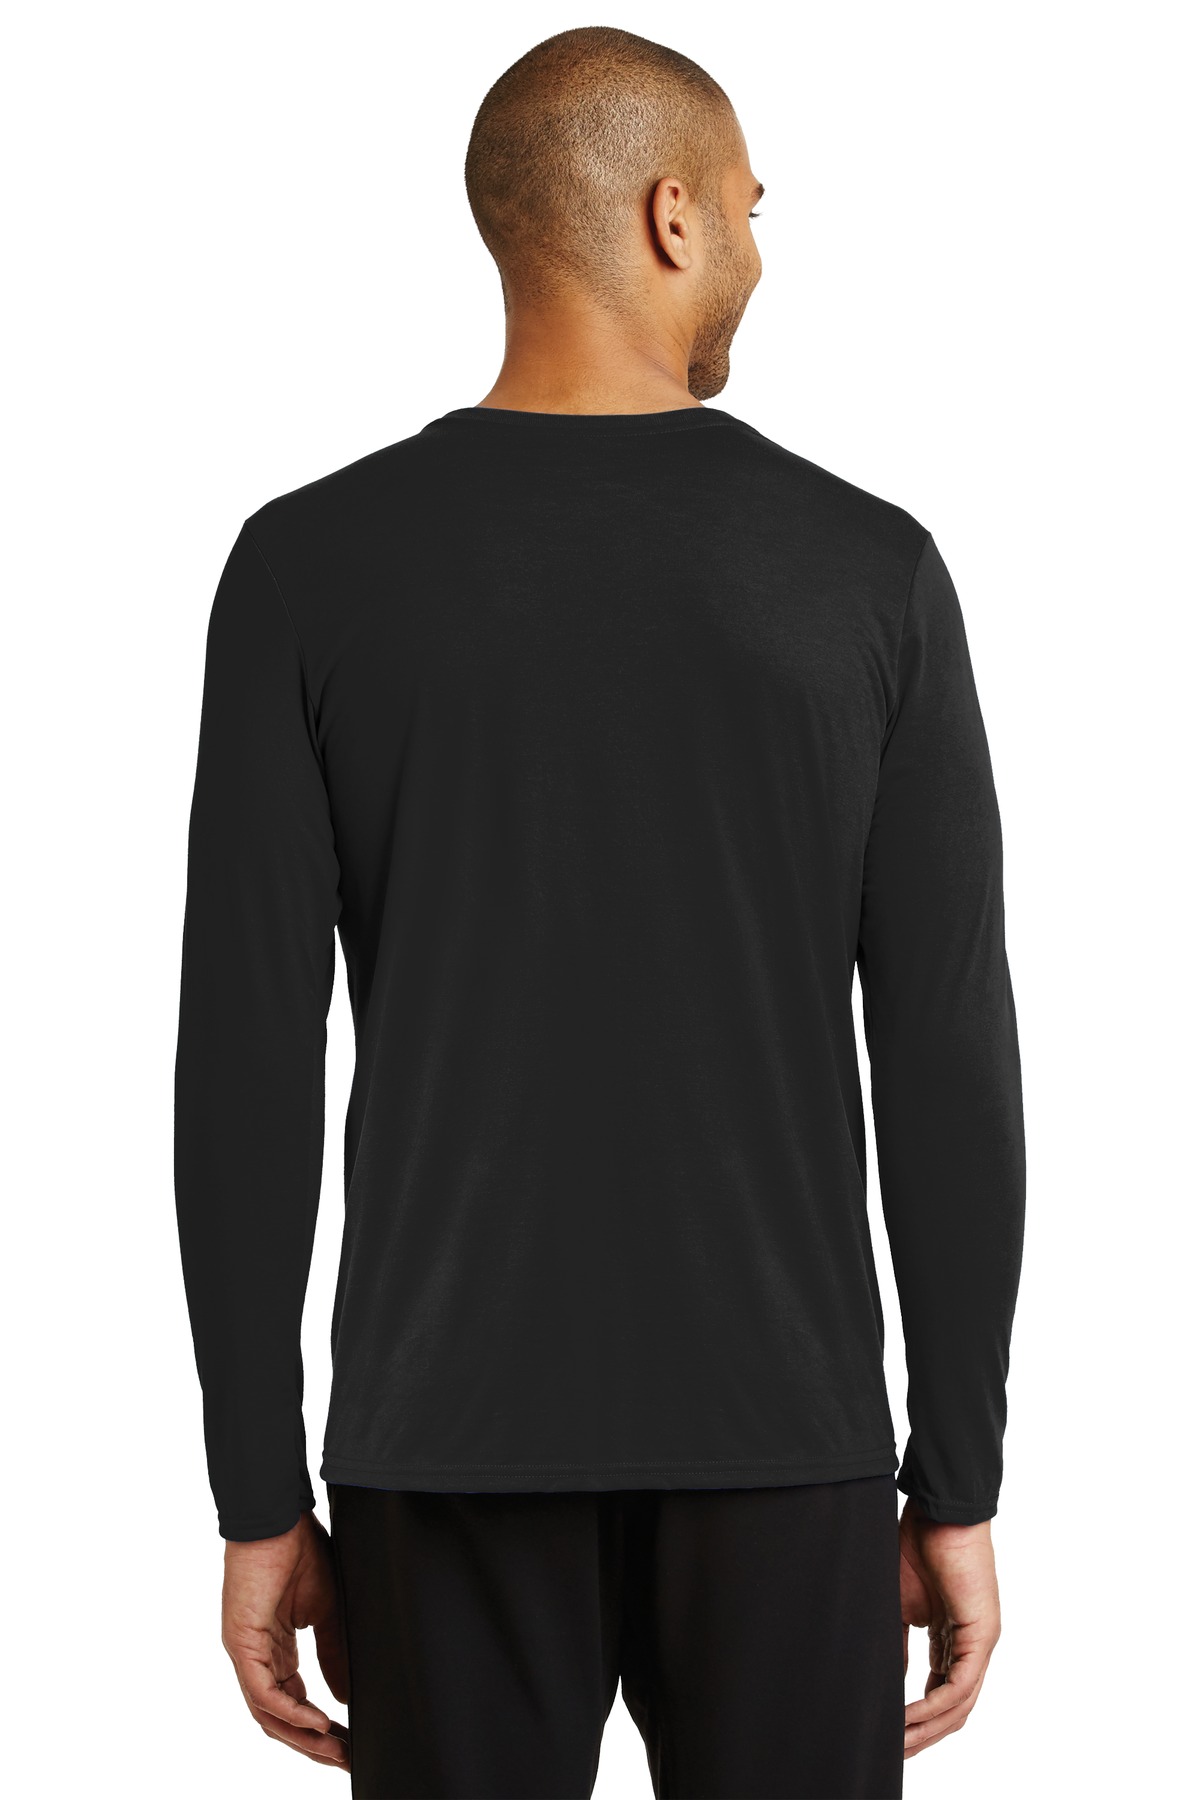 Gildan Performance Long Sleeve T-Shirt. 42400 – Dynasty Custom